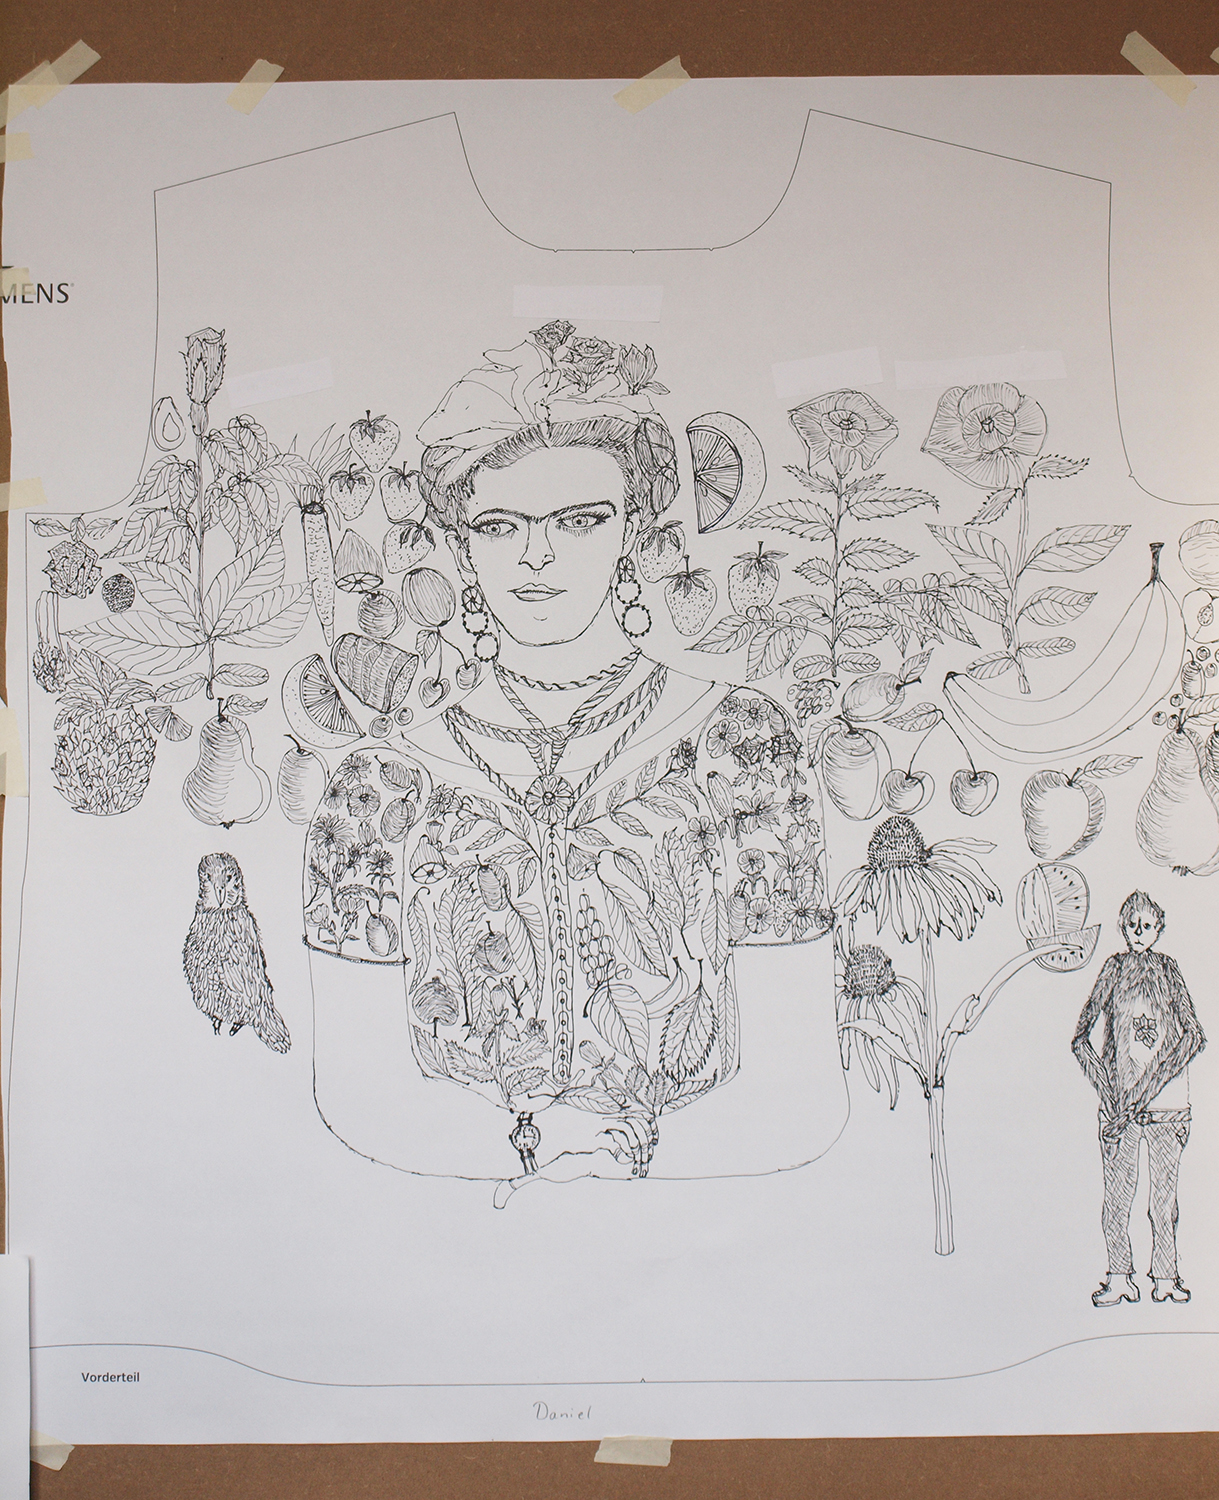 Daniel Schoa - Atelier blau, Worms - Teil der gezeichneten Vorlage für das Hemd "Tribute to Frida Kahlo"